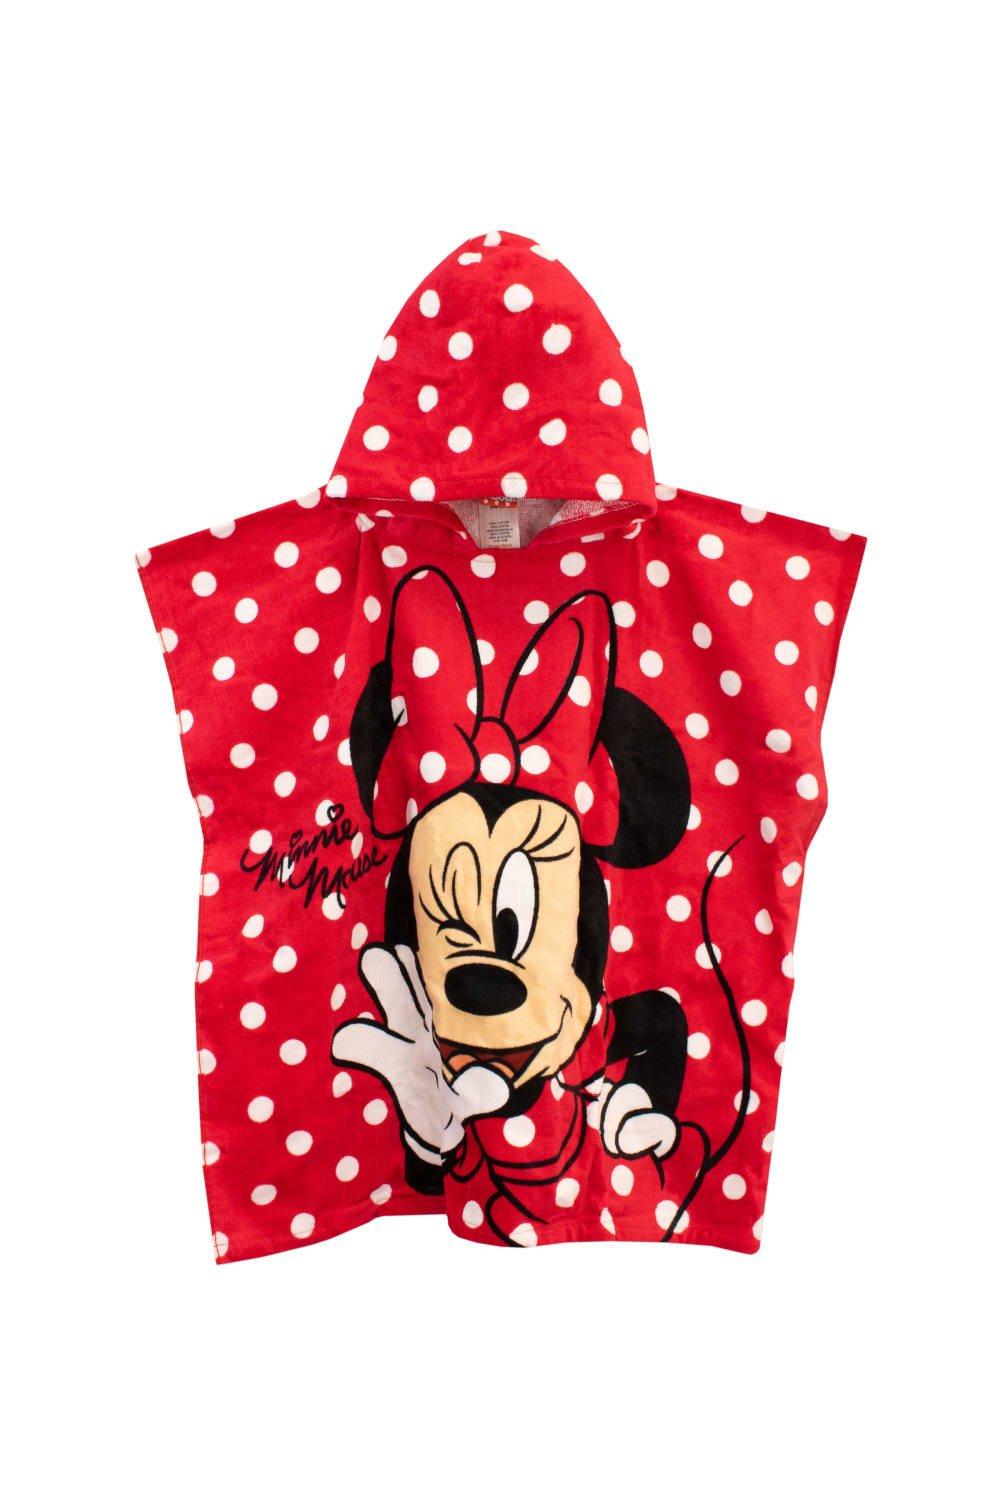 Полотенце-пончо с капюшоном Минни Маус Disney, красный полотенца kipkep полотенце пончо